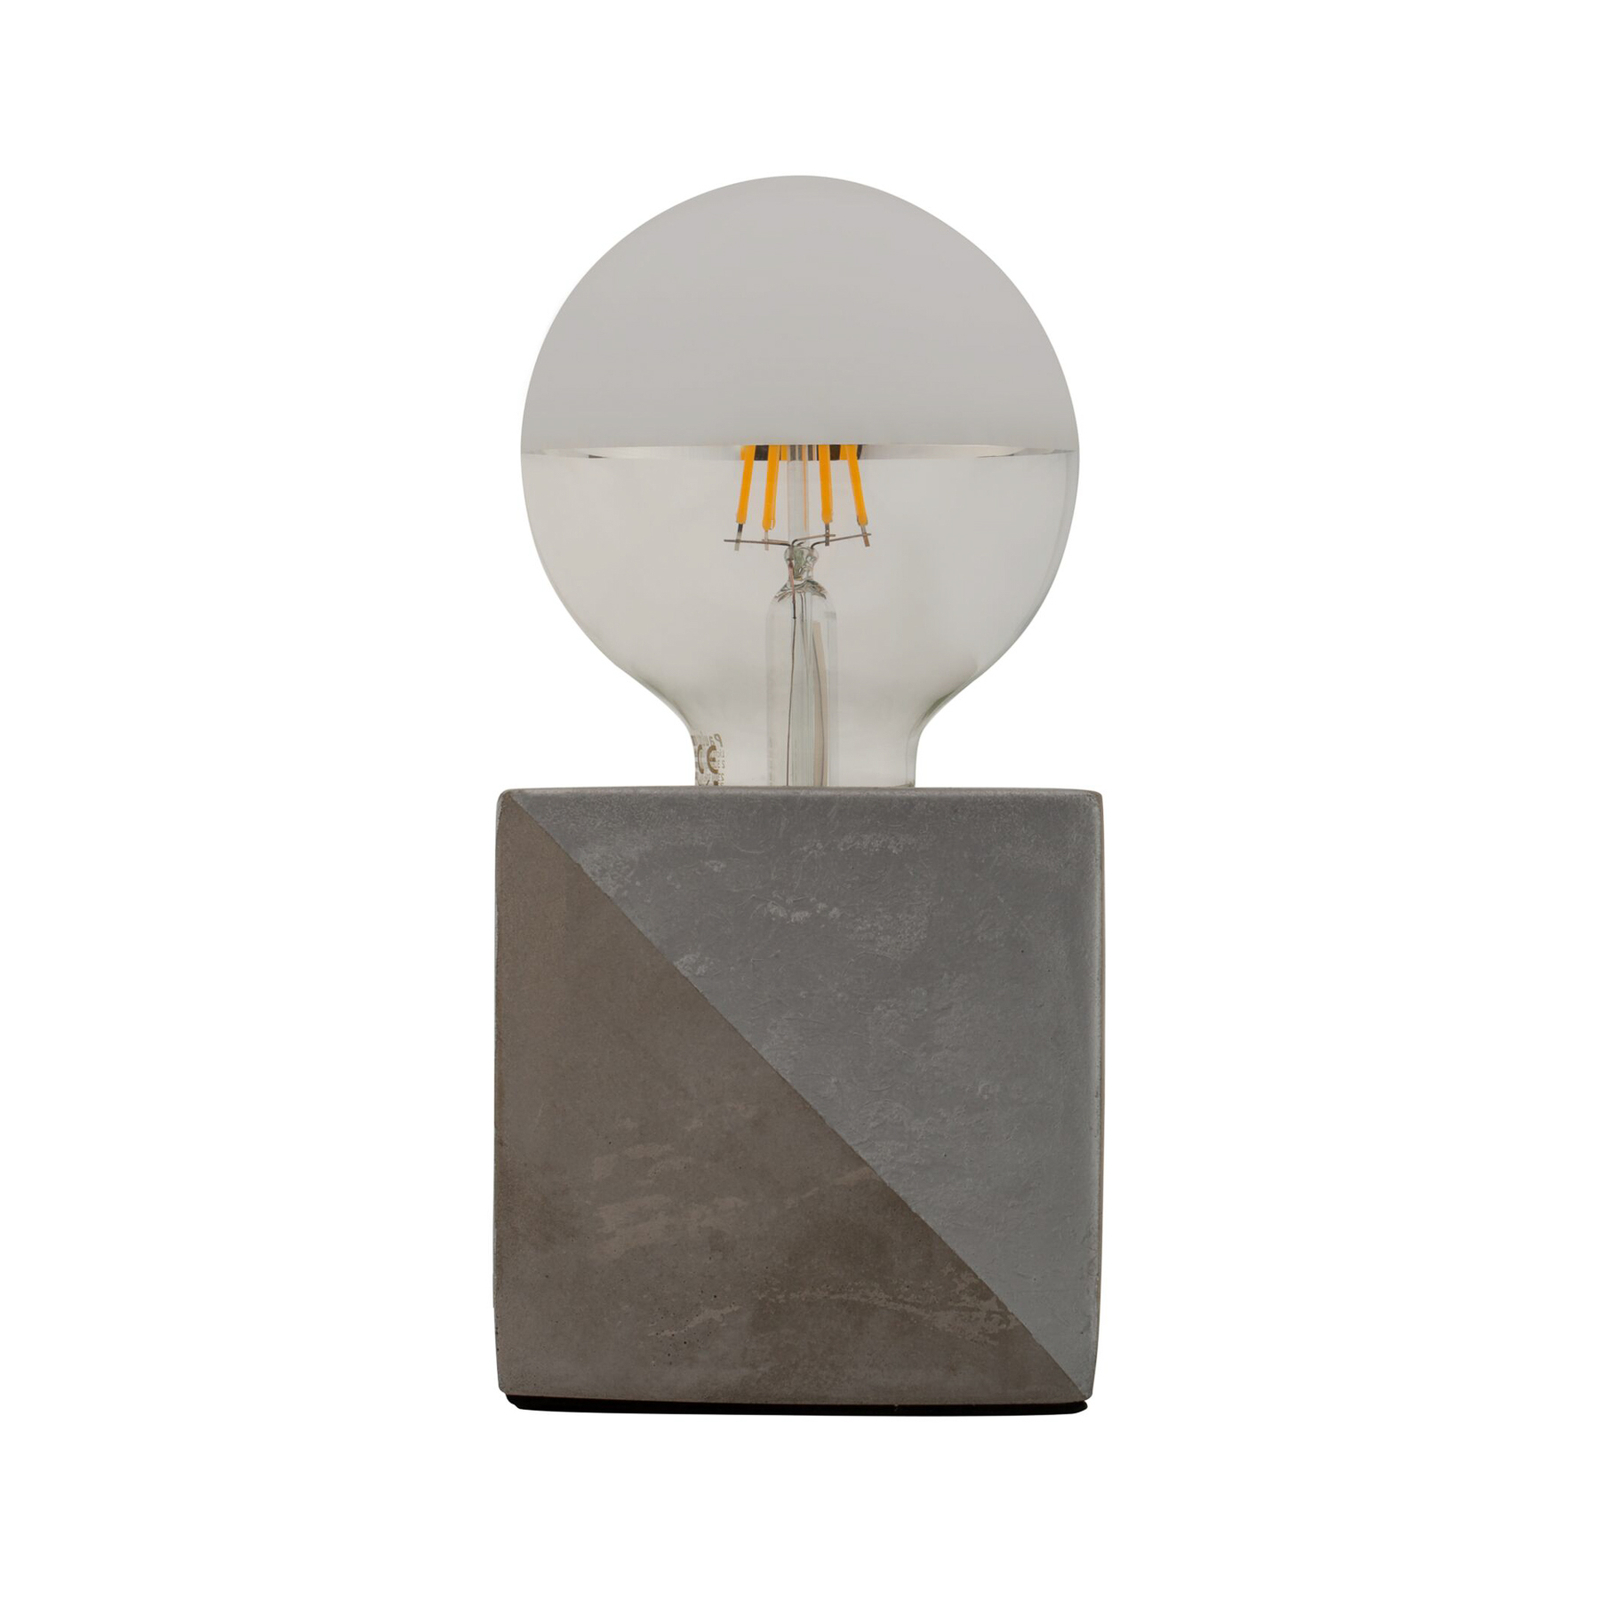 Pauleen Silver Jewel bordslampa med betongsockel